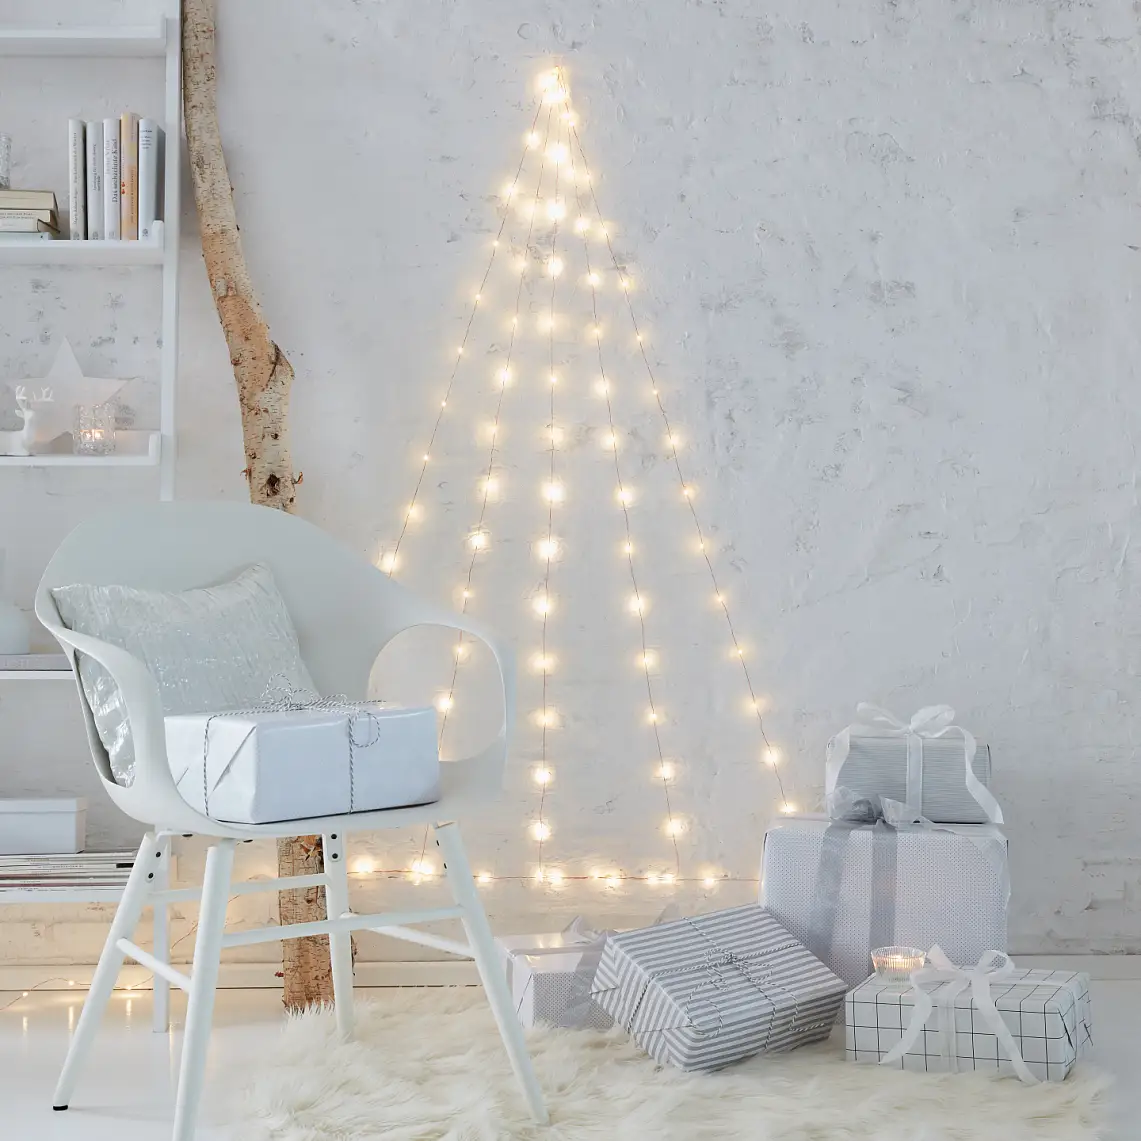 不需要用针，只需极低的维护费用： 不需要装饰的圣诞树。 制作带有LED仙女灯的圣诞树，用透明挂钩将灯挂到墙上去。